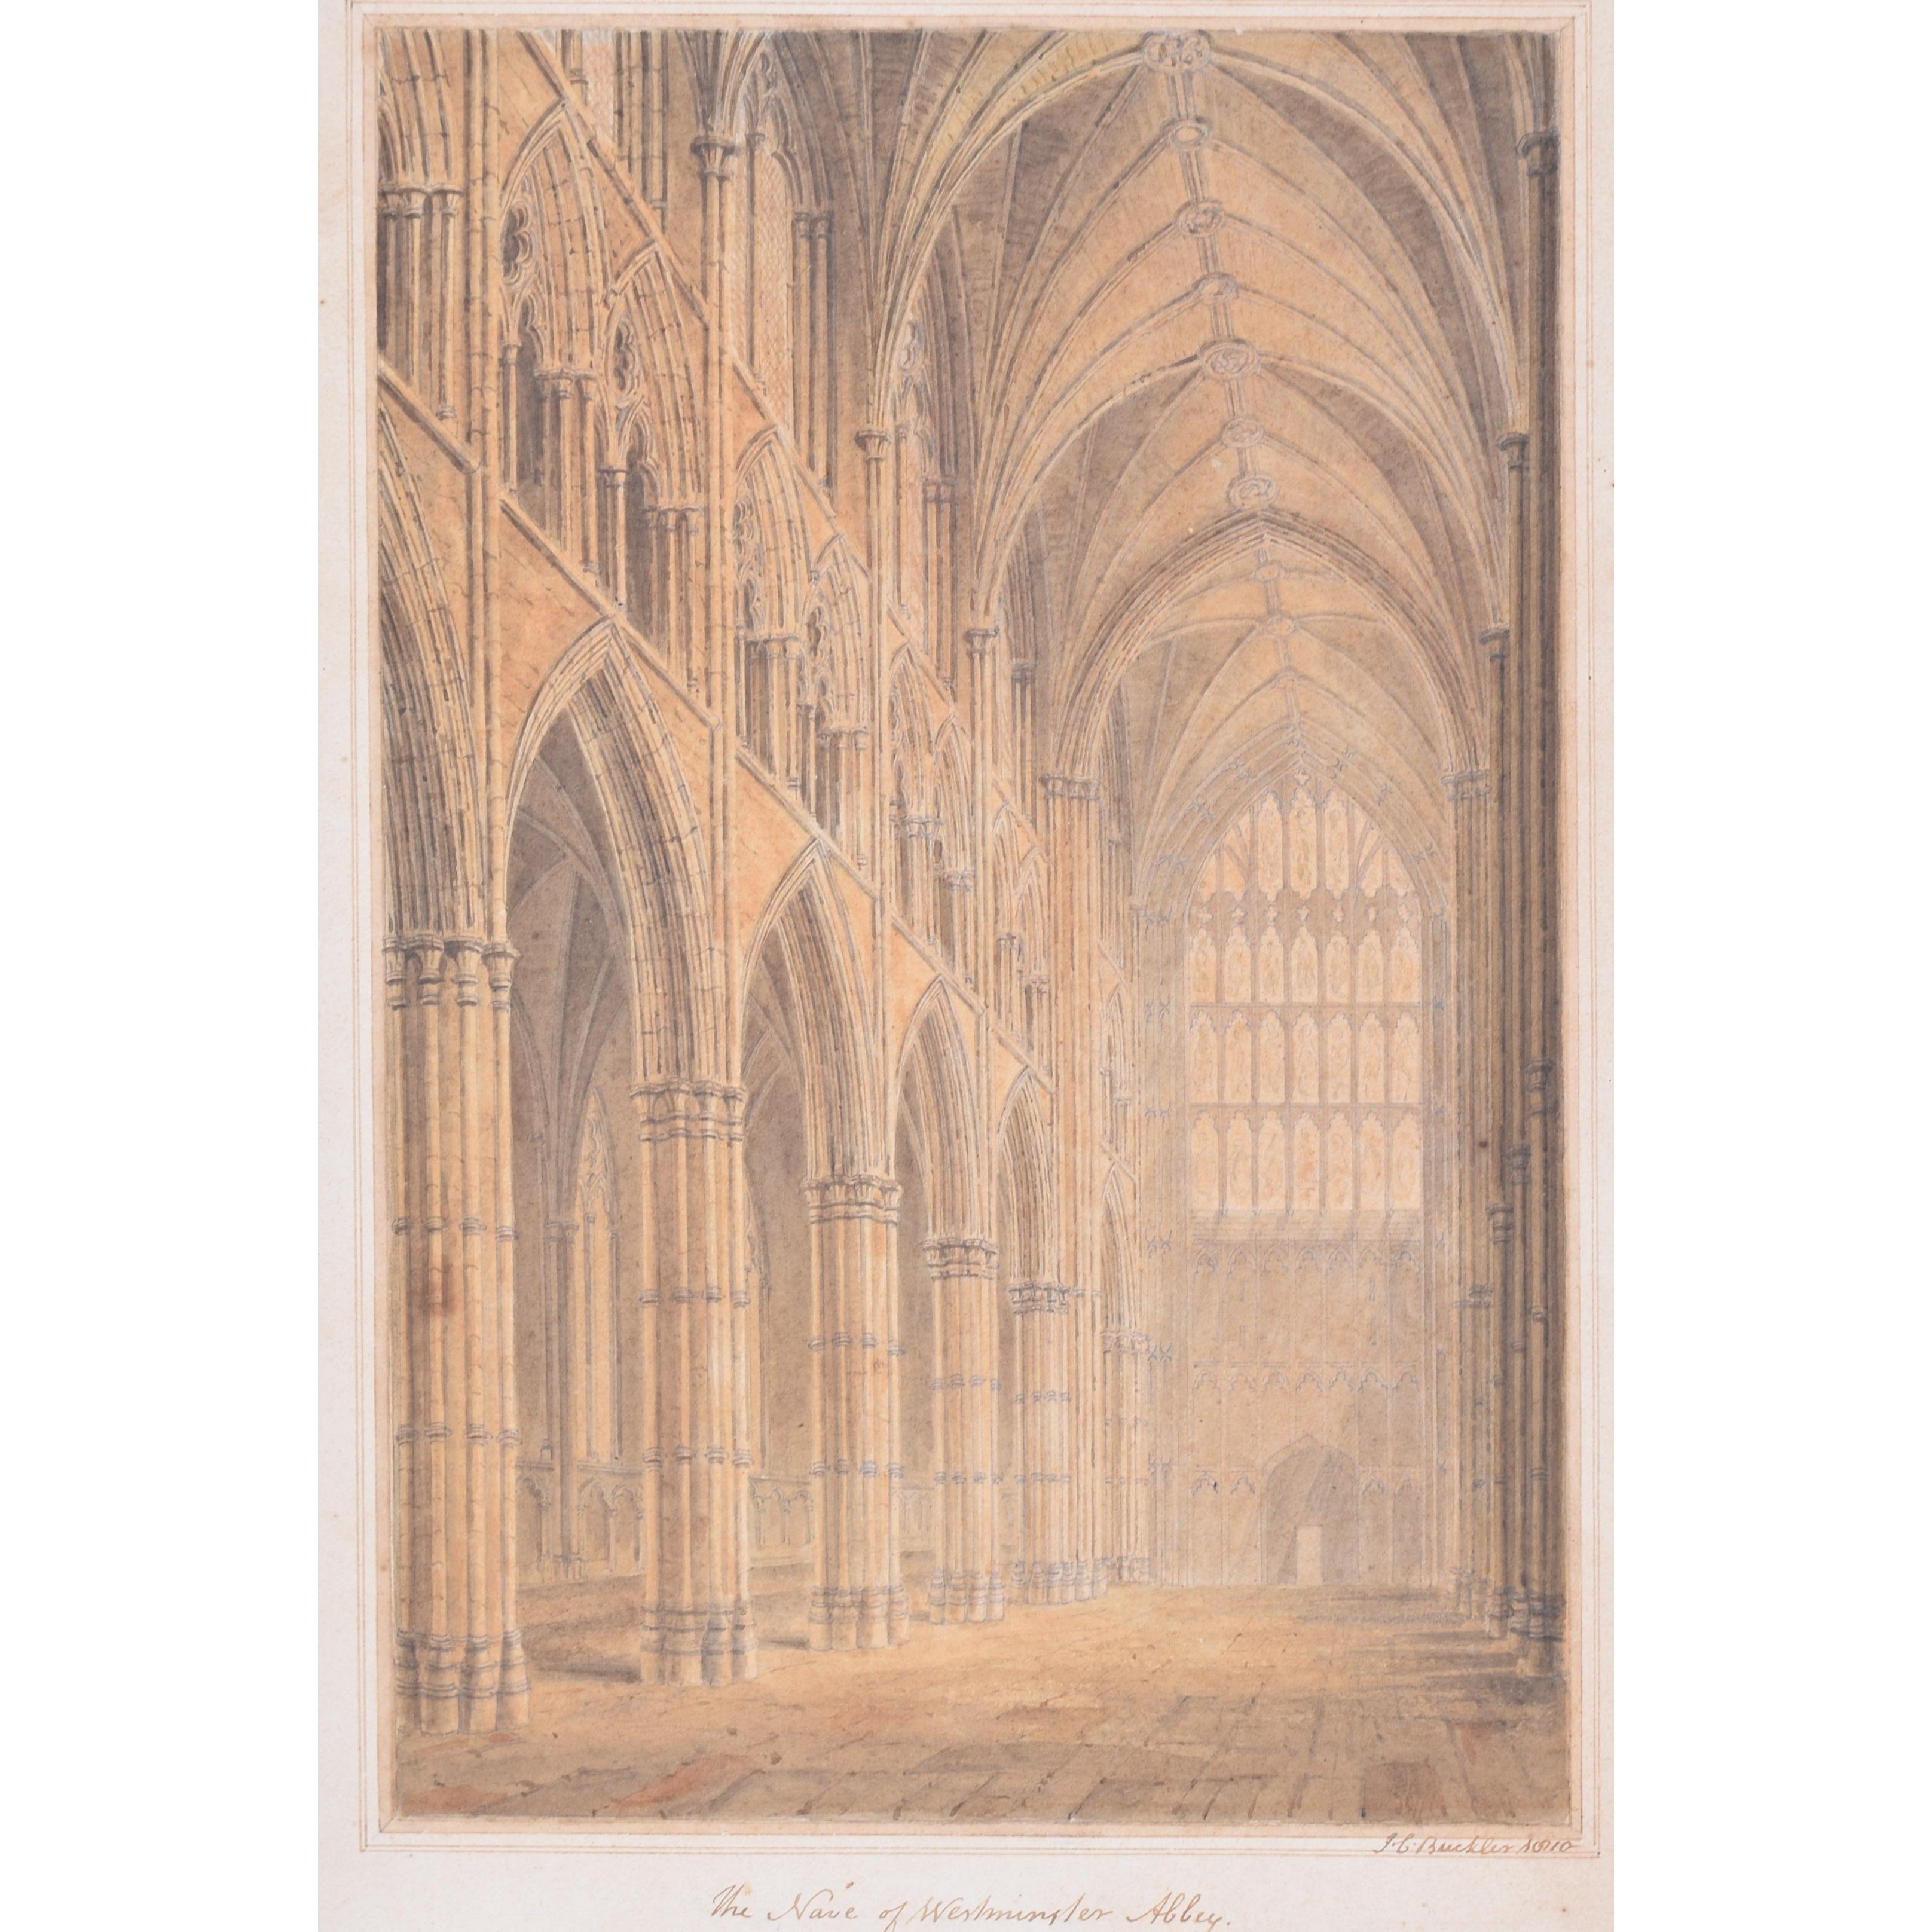 John Chessel Buckler (1793 - 1894)
La nef de l'abbaye de Westminster
Aquarelle
25 x 17 cm

Signé, titré et daté 1810.

John Chessell Buckler était un architecte britannique, fils aîné de l'architecte John Buckler. Il a notamment travaillé à la